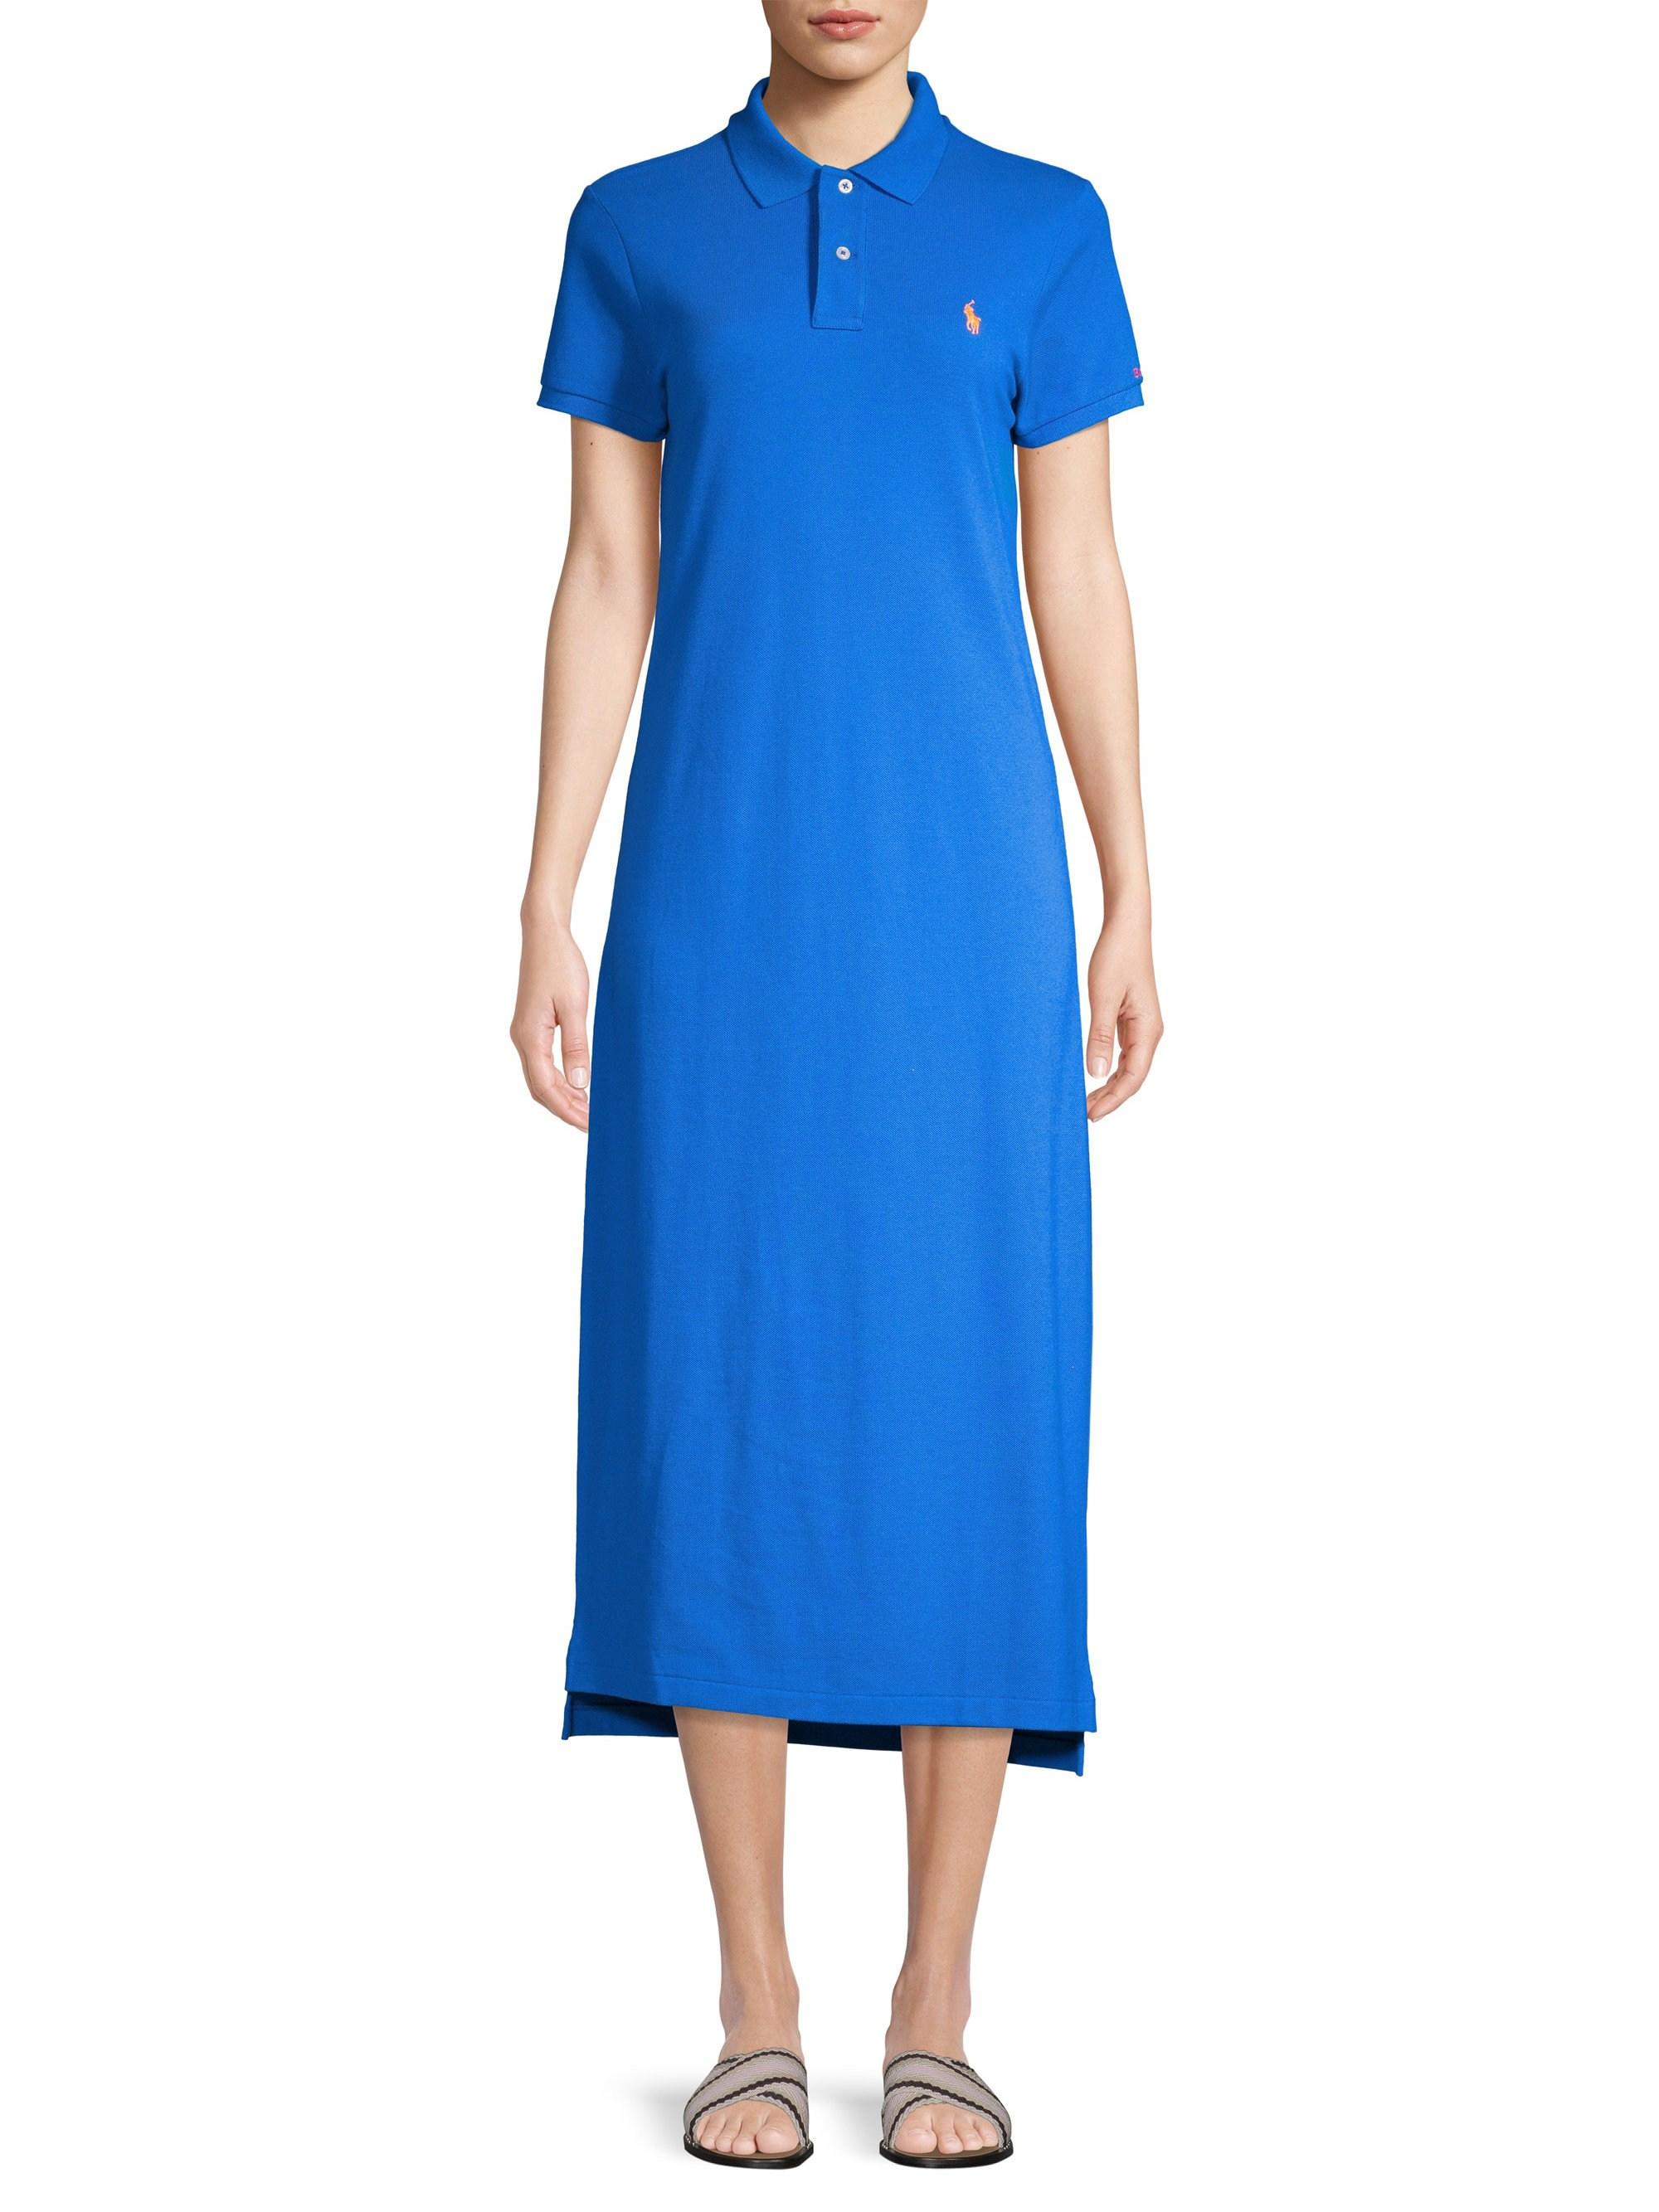 blue polo dress